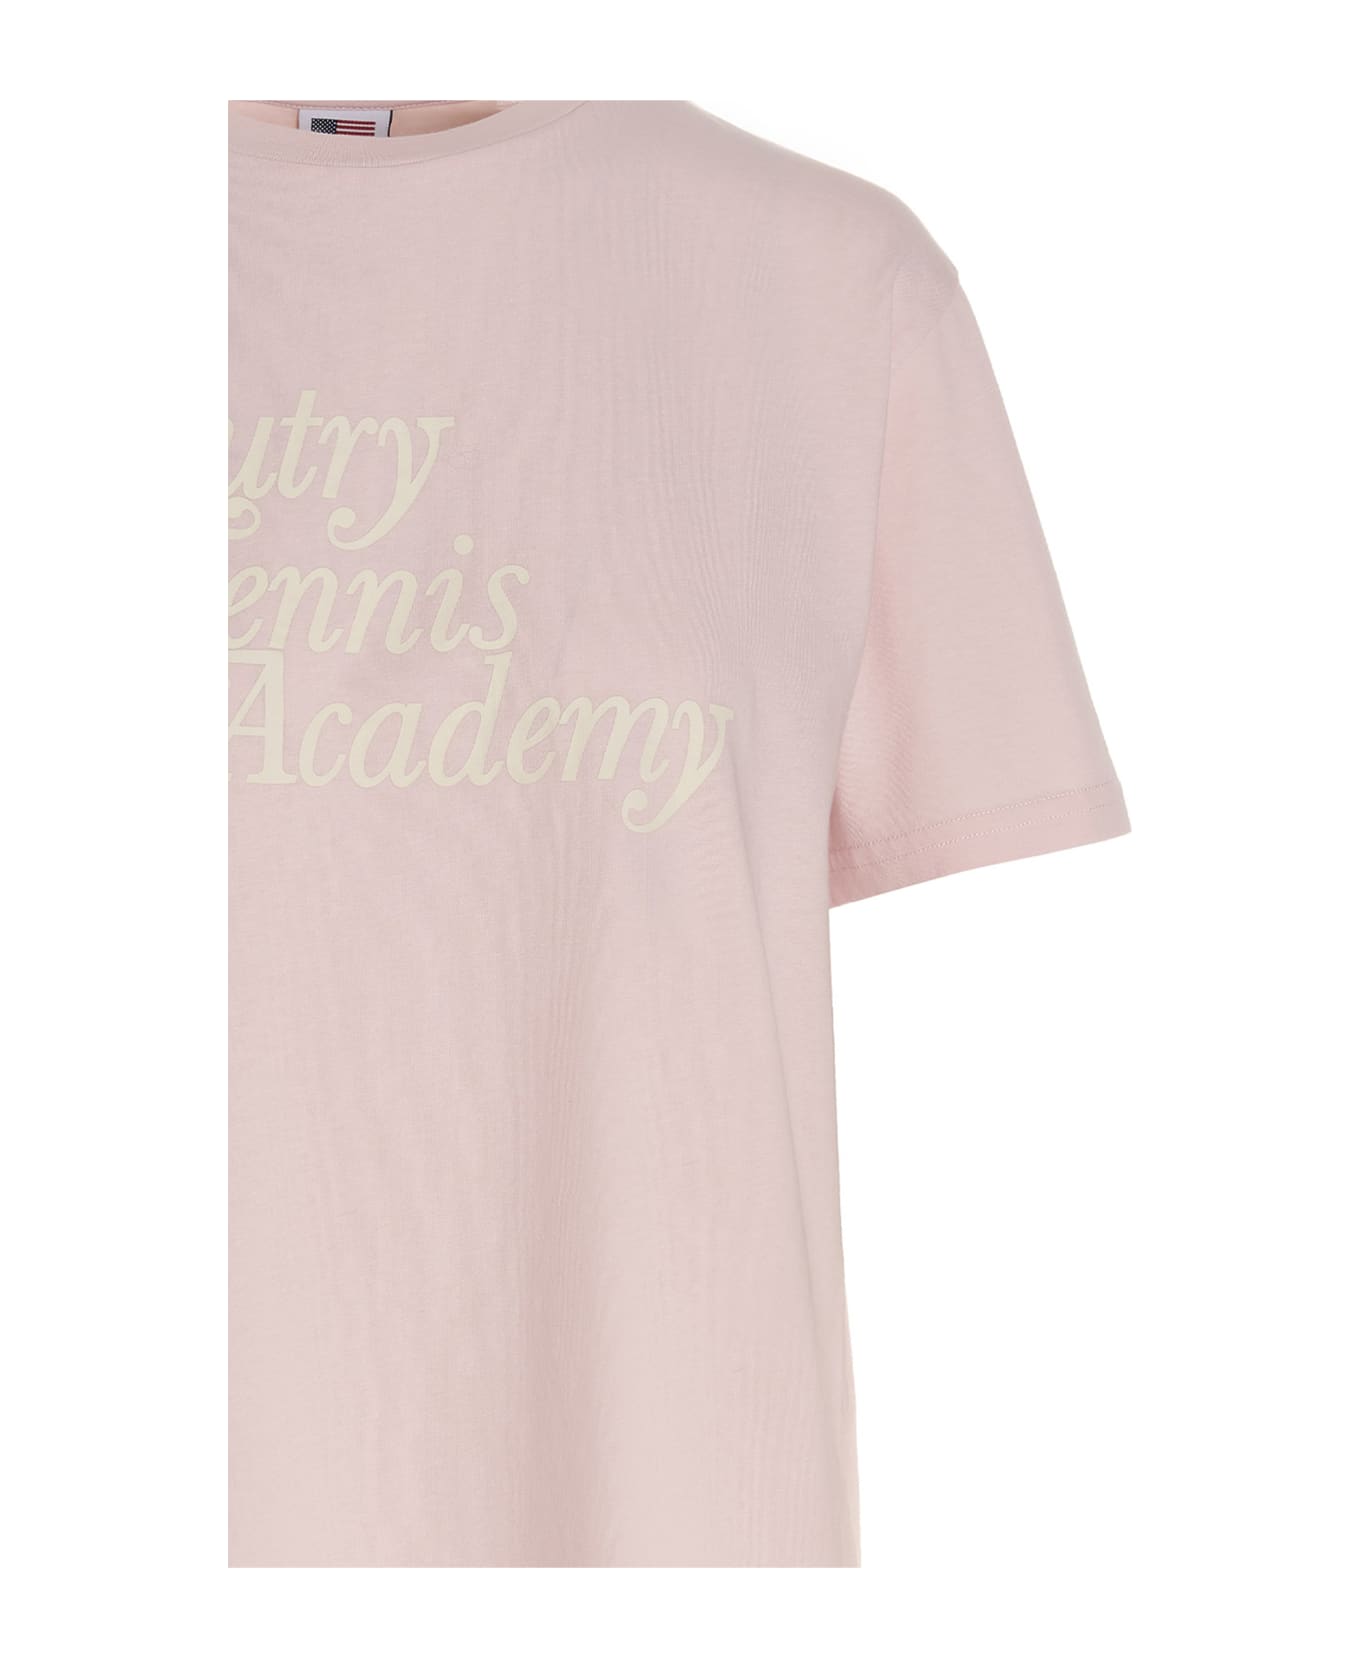 Autry Tennis Academy T-shirt - Pink